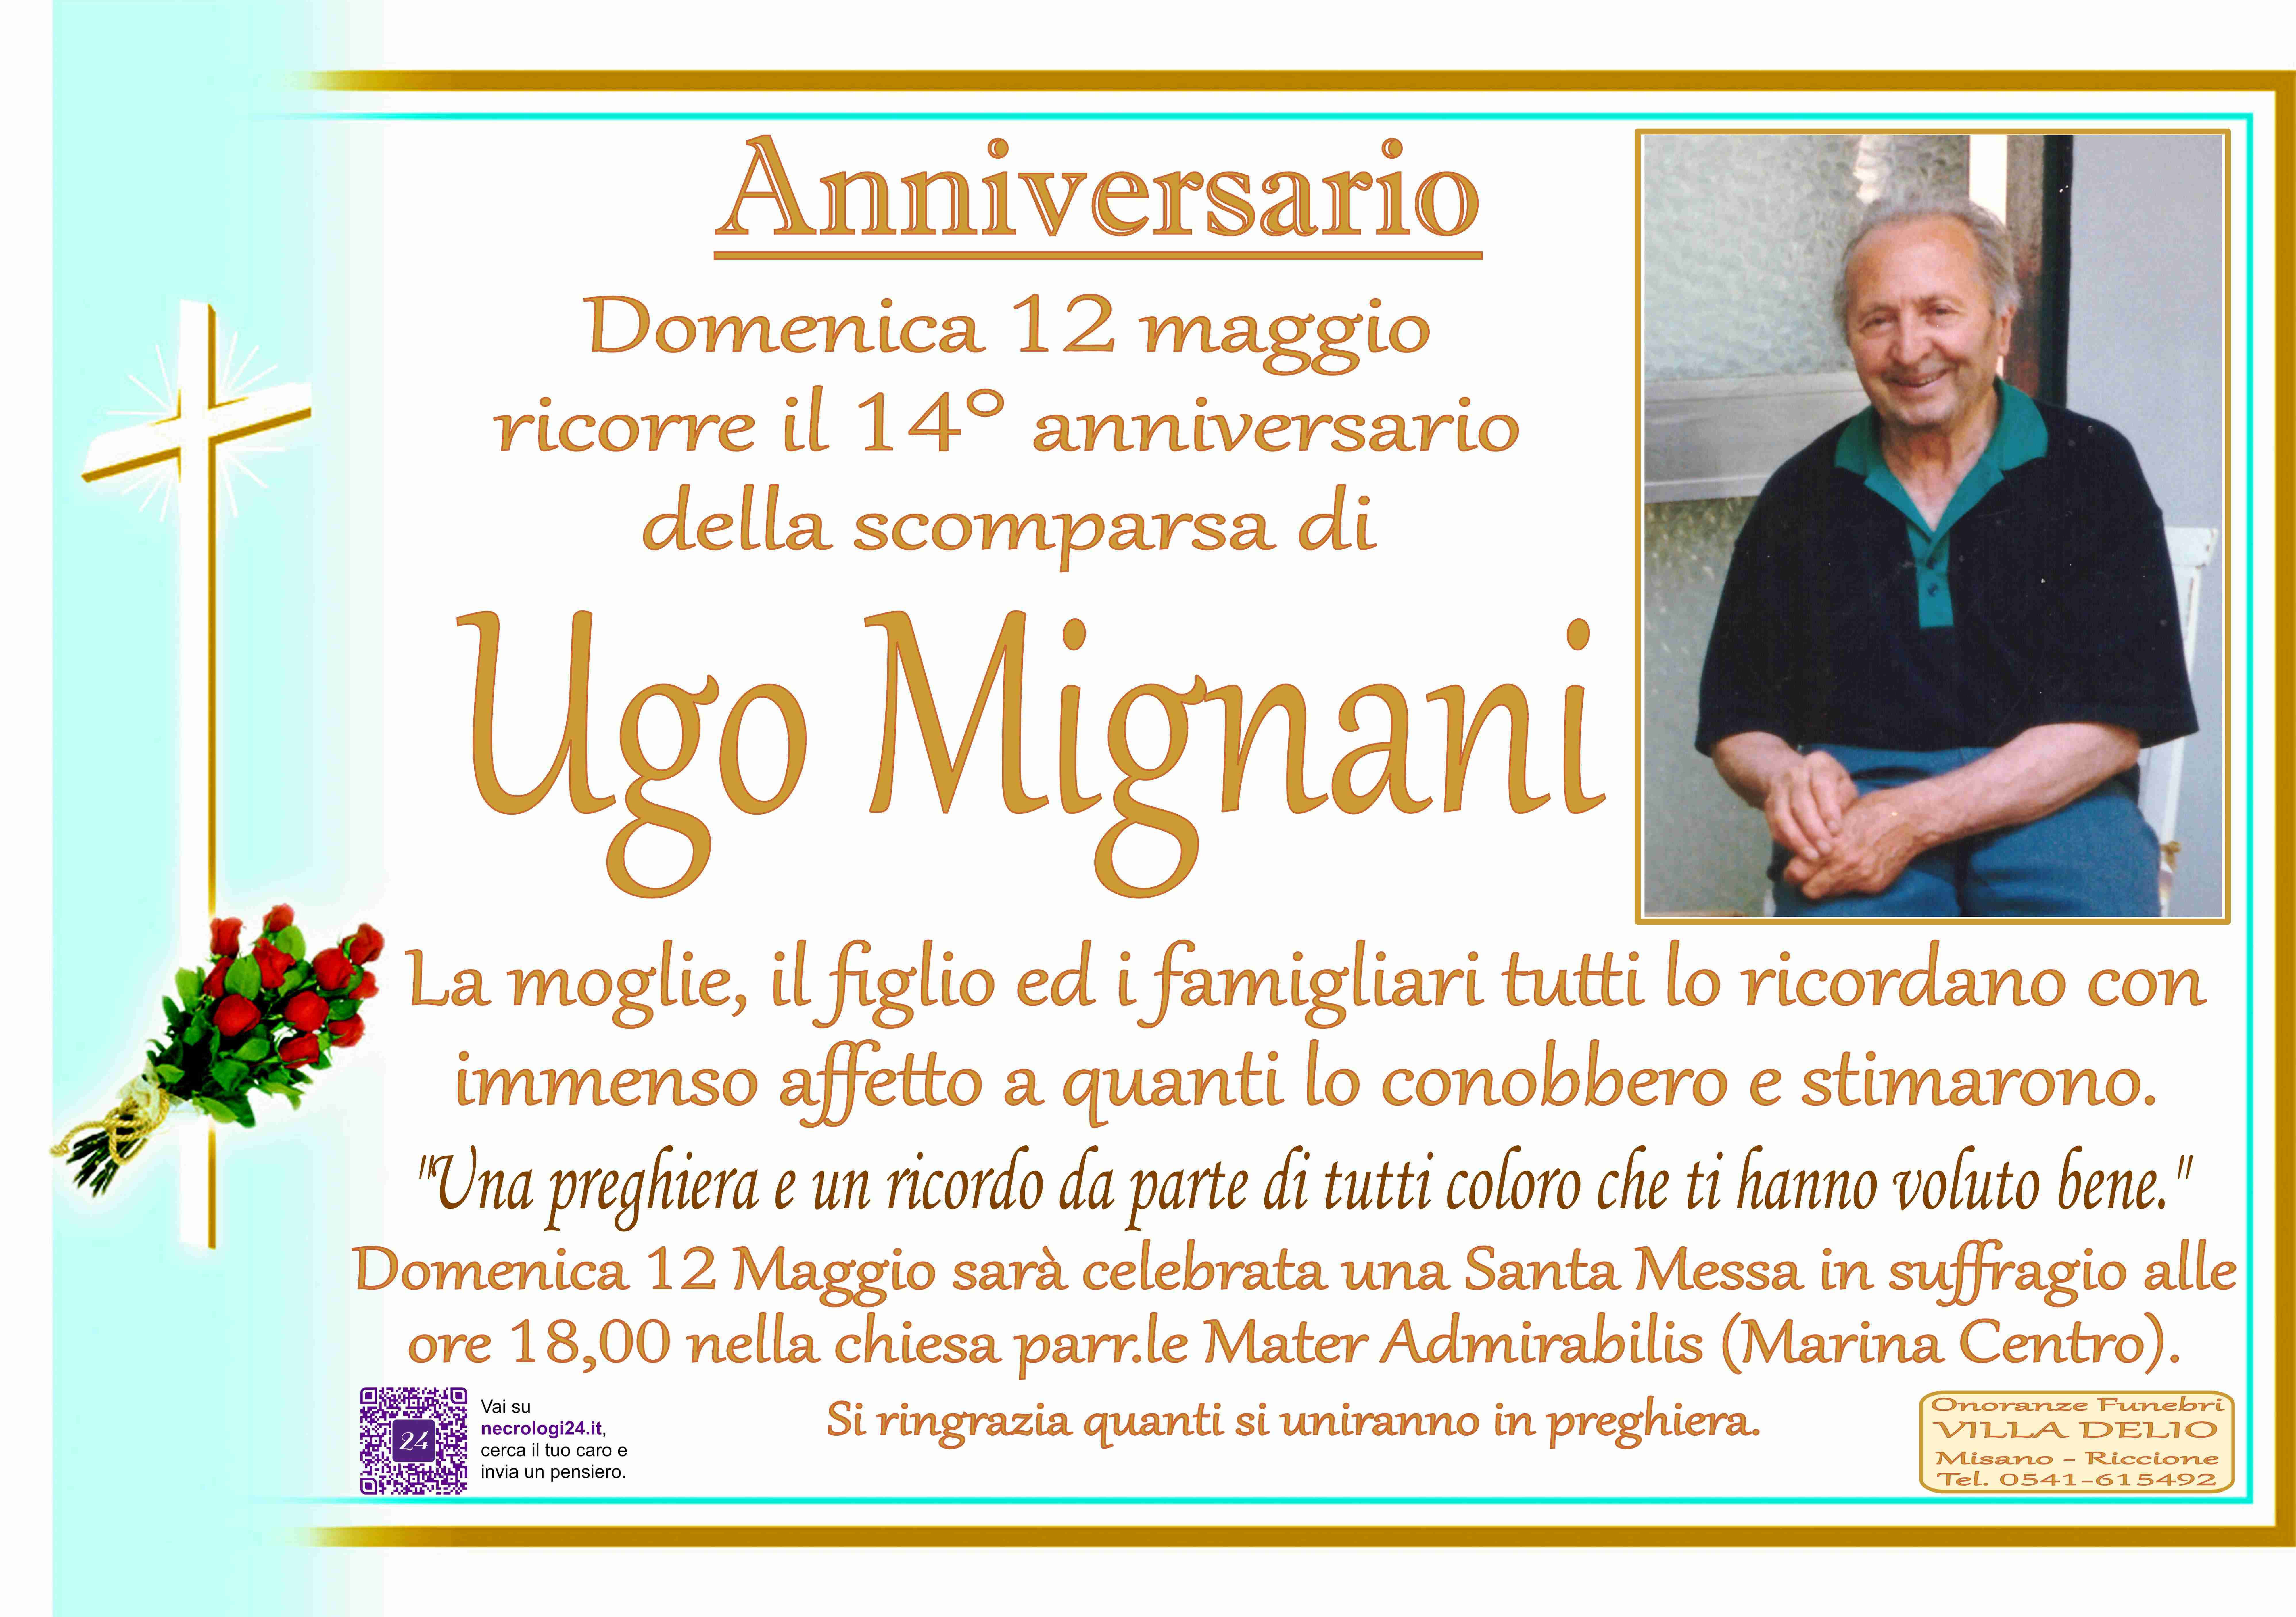 Ugo Mignani